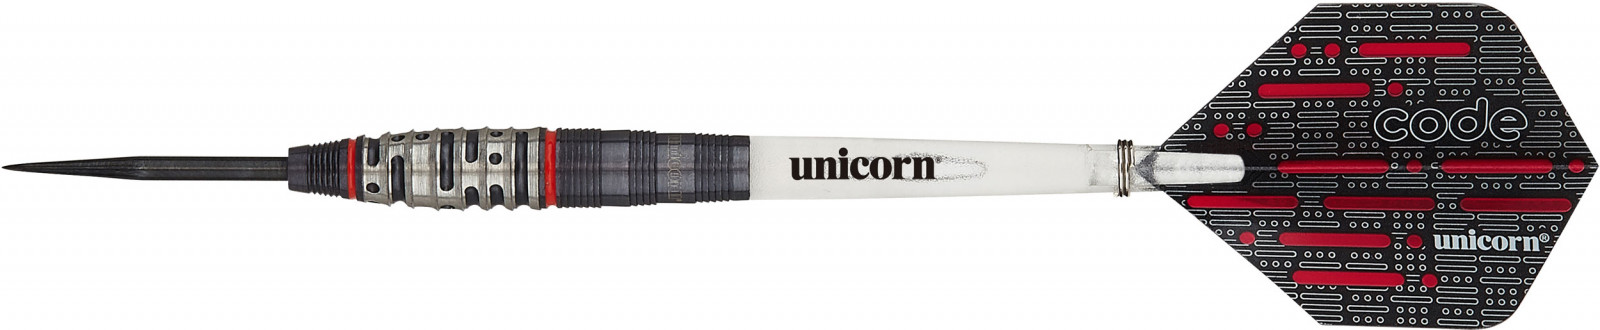 Code Unicorn - Steeldart